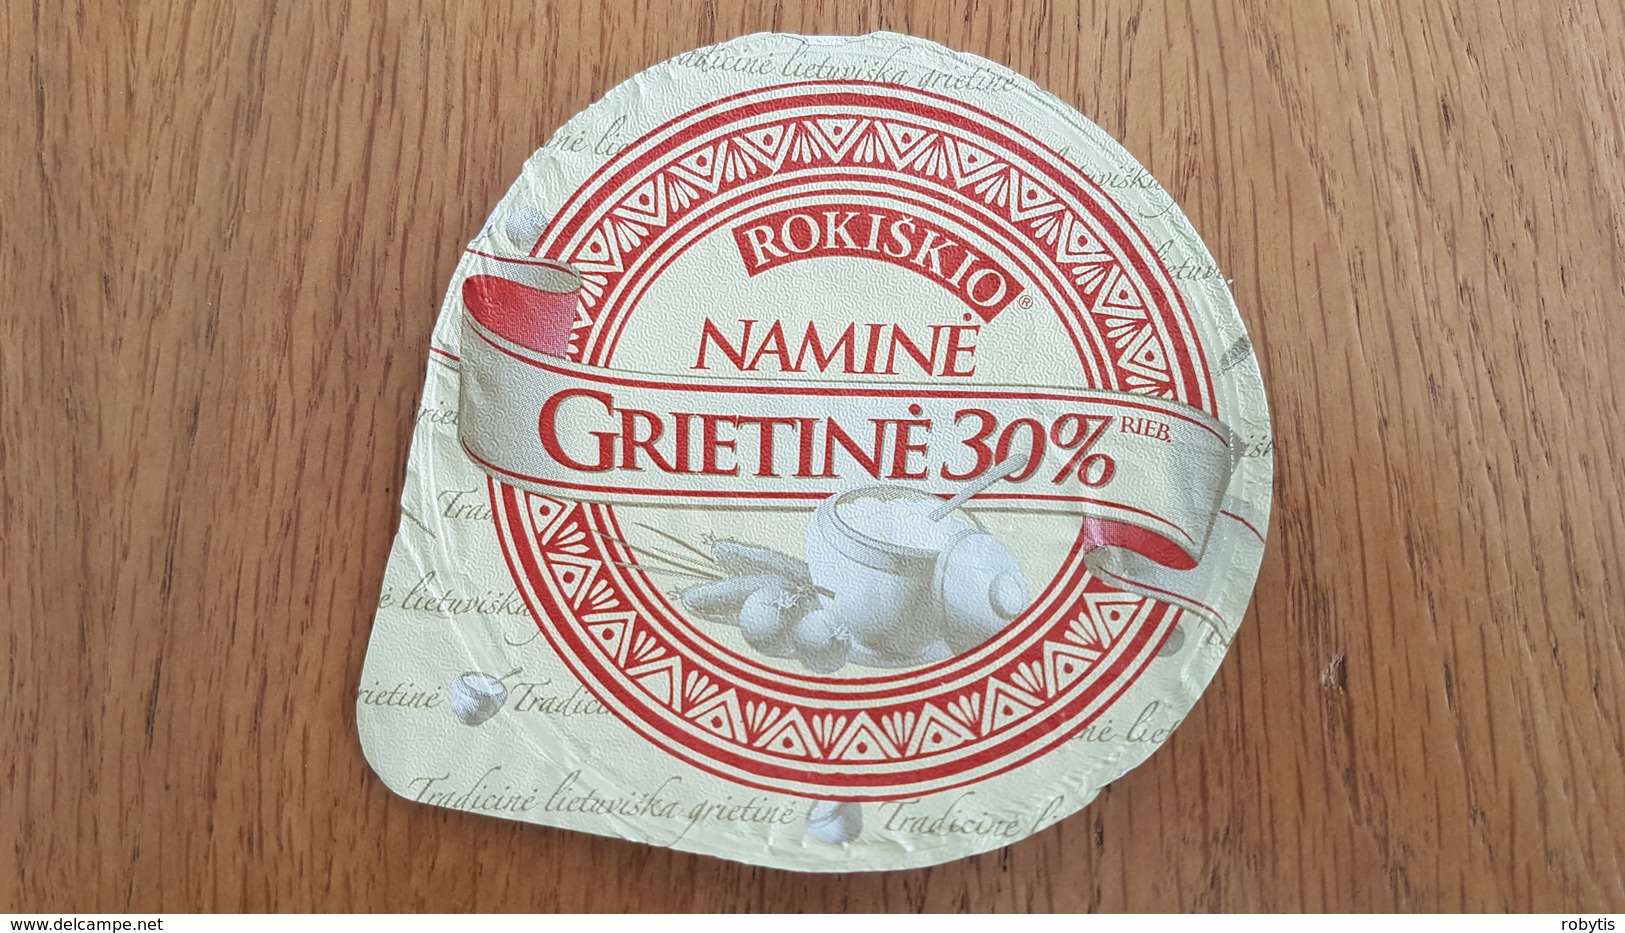 Lithuania Litauen Sour Cream 30% - Opercules De Lait